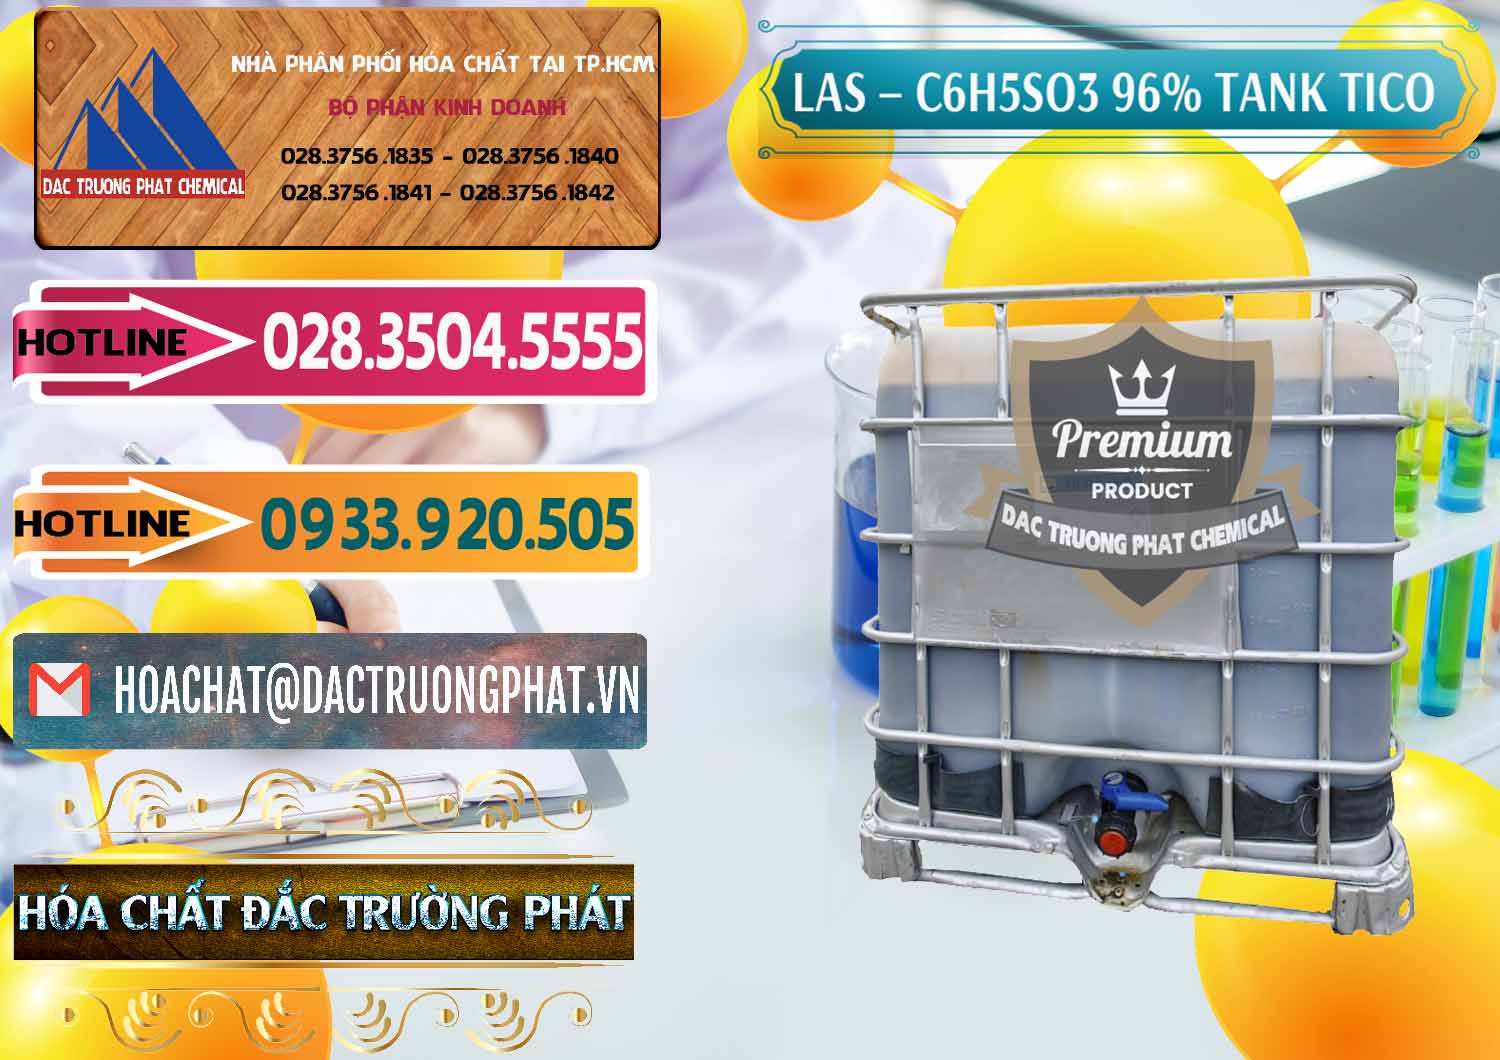 Cty bán & cung cấp Chất tạo bọt Las P Tico Tank IBC Bồn Việt Nam - 0488 - Nhà cung cấp ( phân phối ) hóa chất tại TP.HCM - dactruongphat.vn